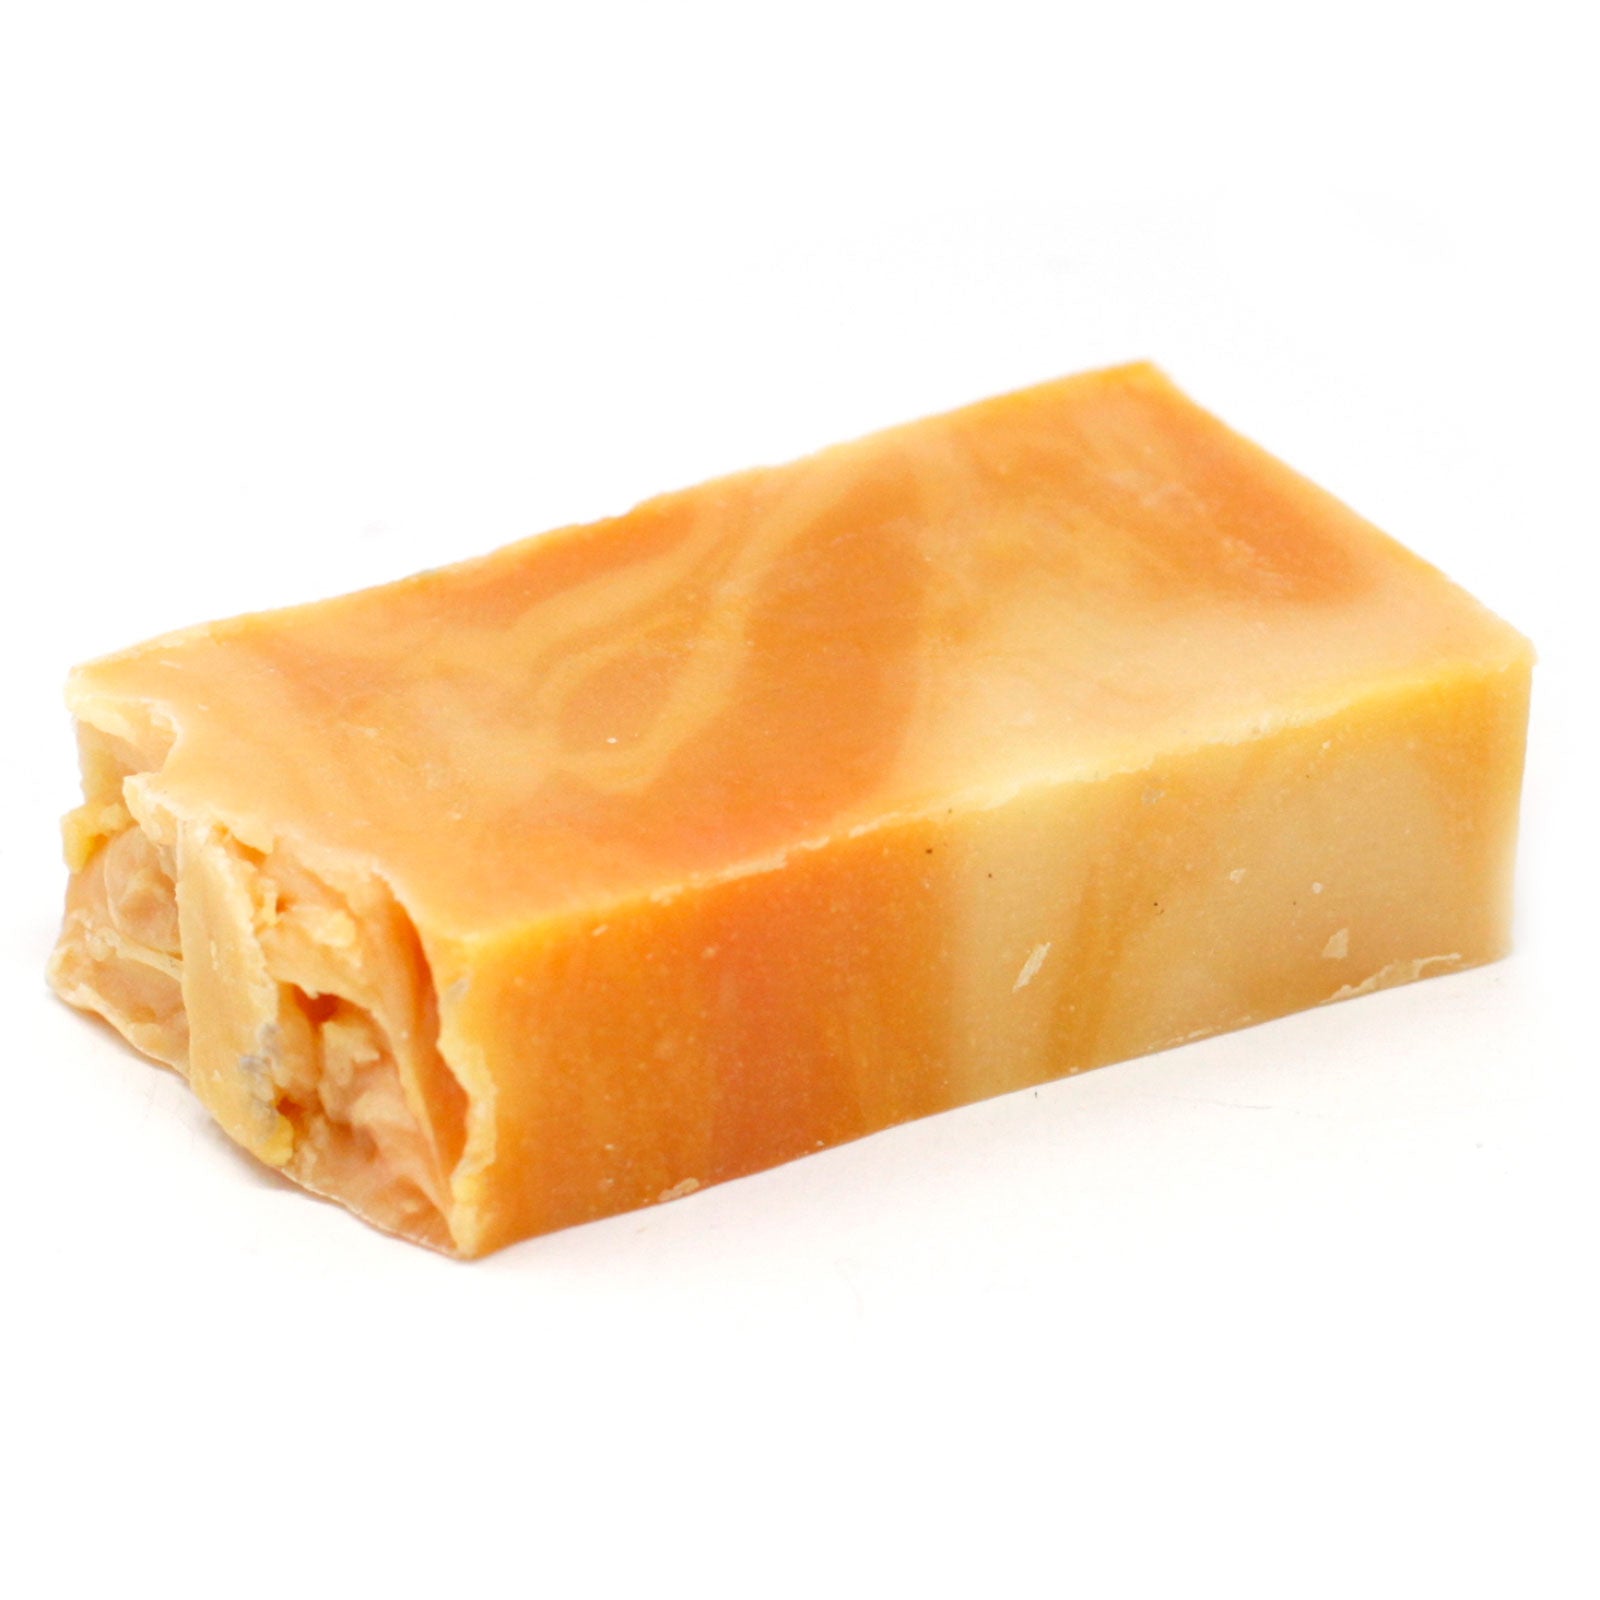 Orange - Olive Oil Soap - SLICE approx 100g